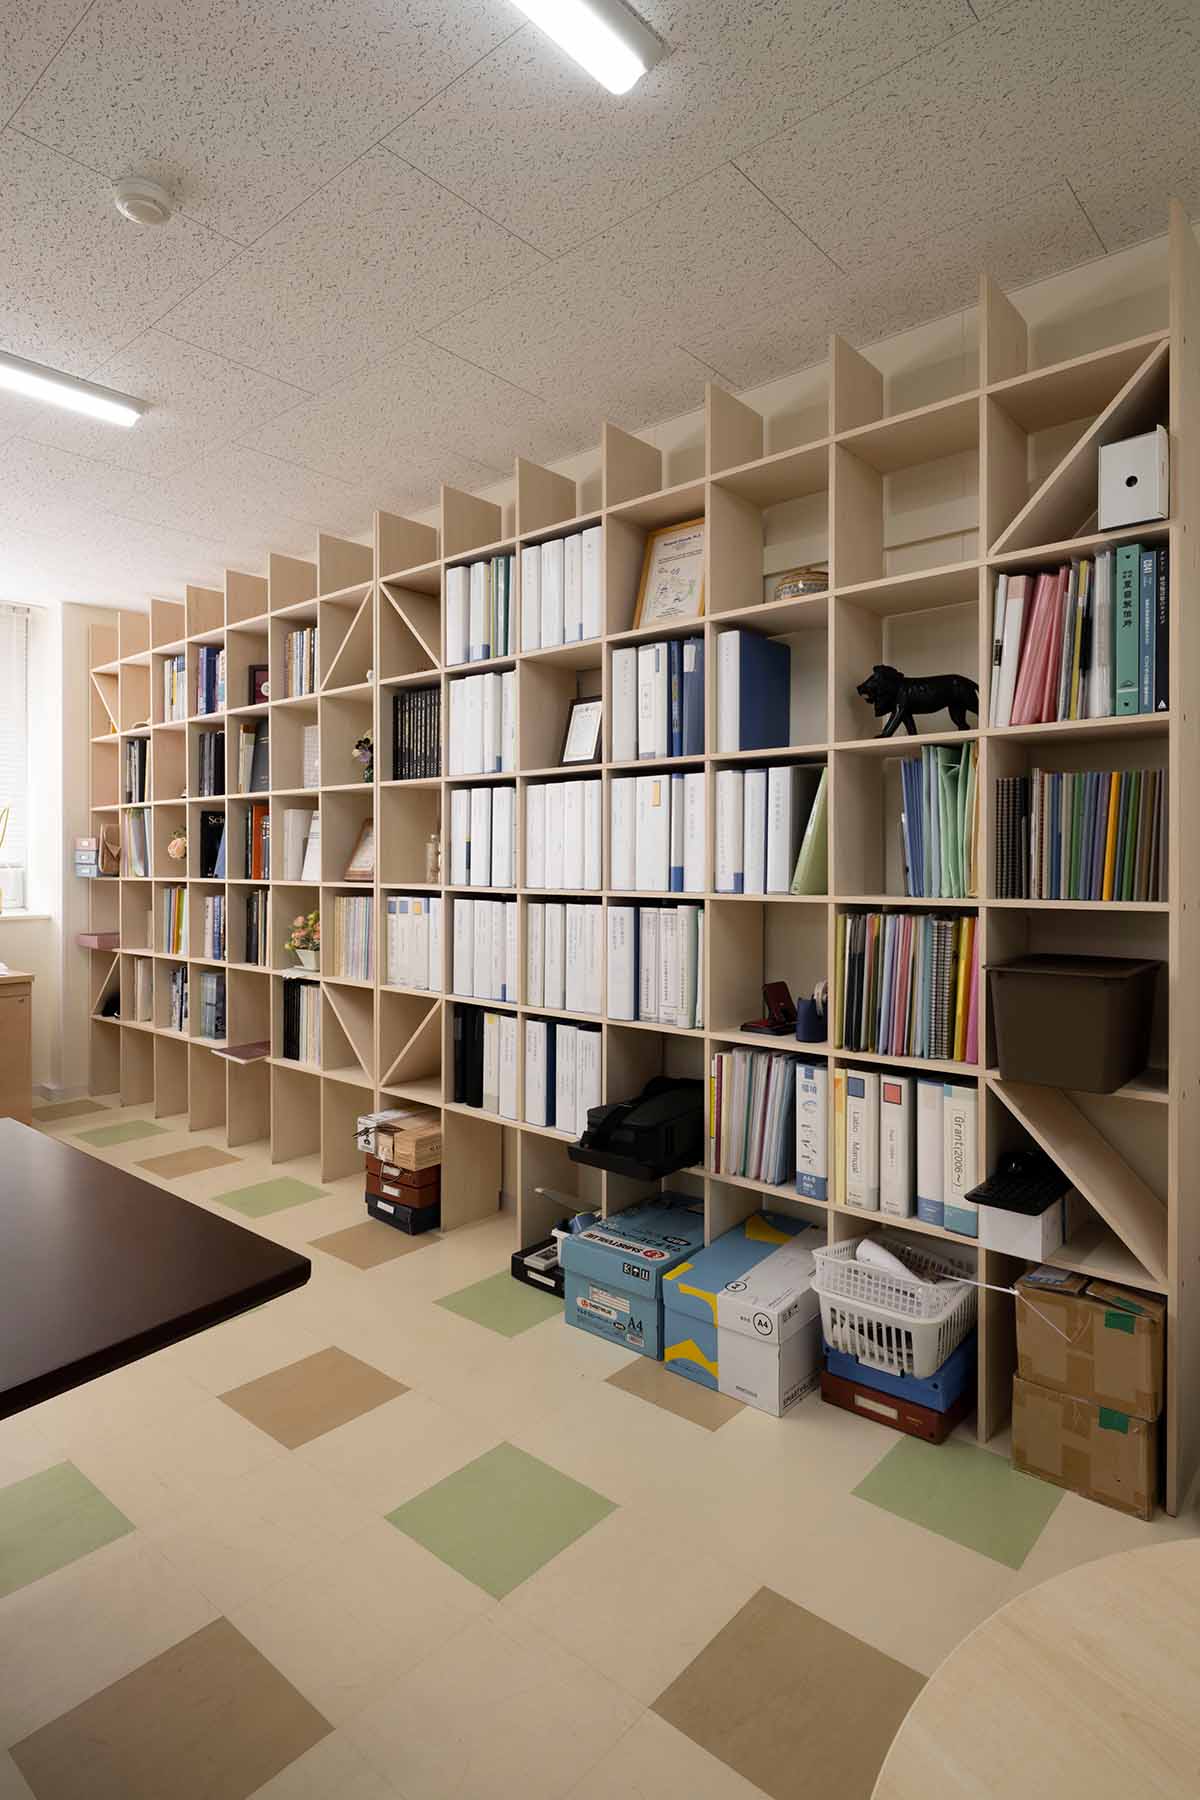 新しい研究室の壁面に | 壁一面の本棚 奥行350mm / Shelf (No.137) | マルゲリータお客様の使用例 大学院 研究室 書棚 ブックシェルフ